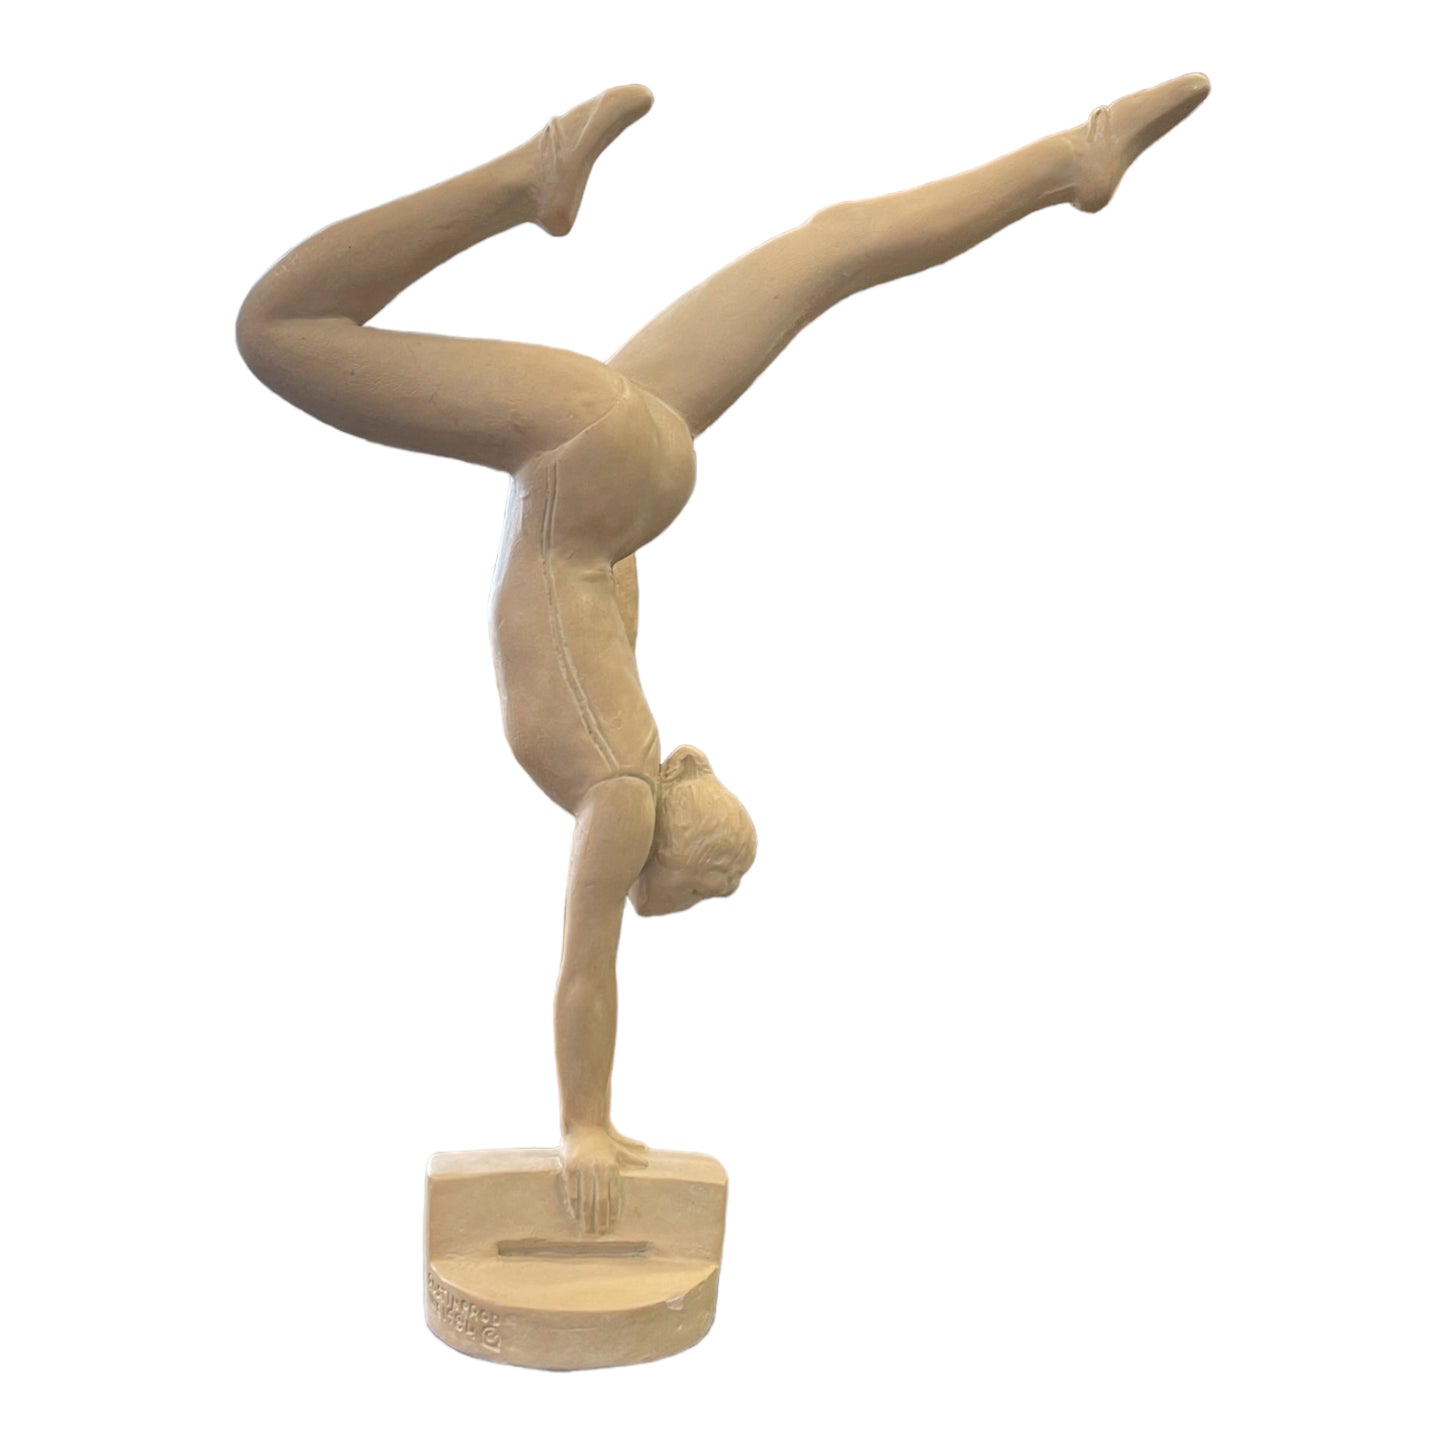 David Fischer The Gymnast Sculpture